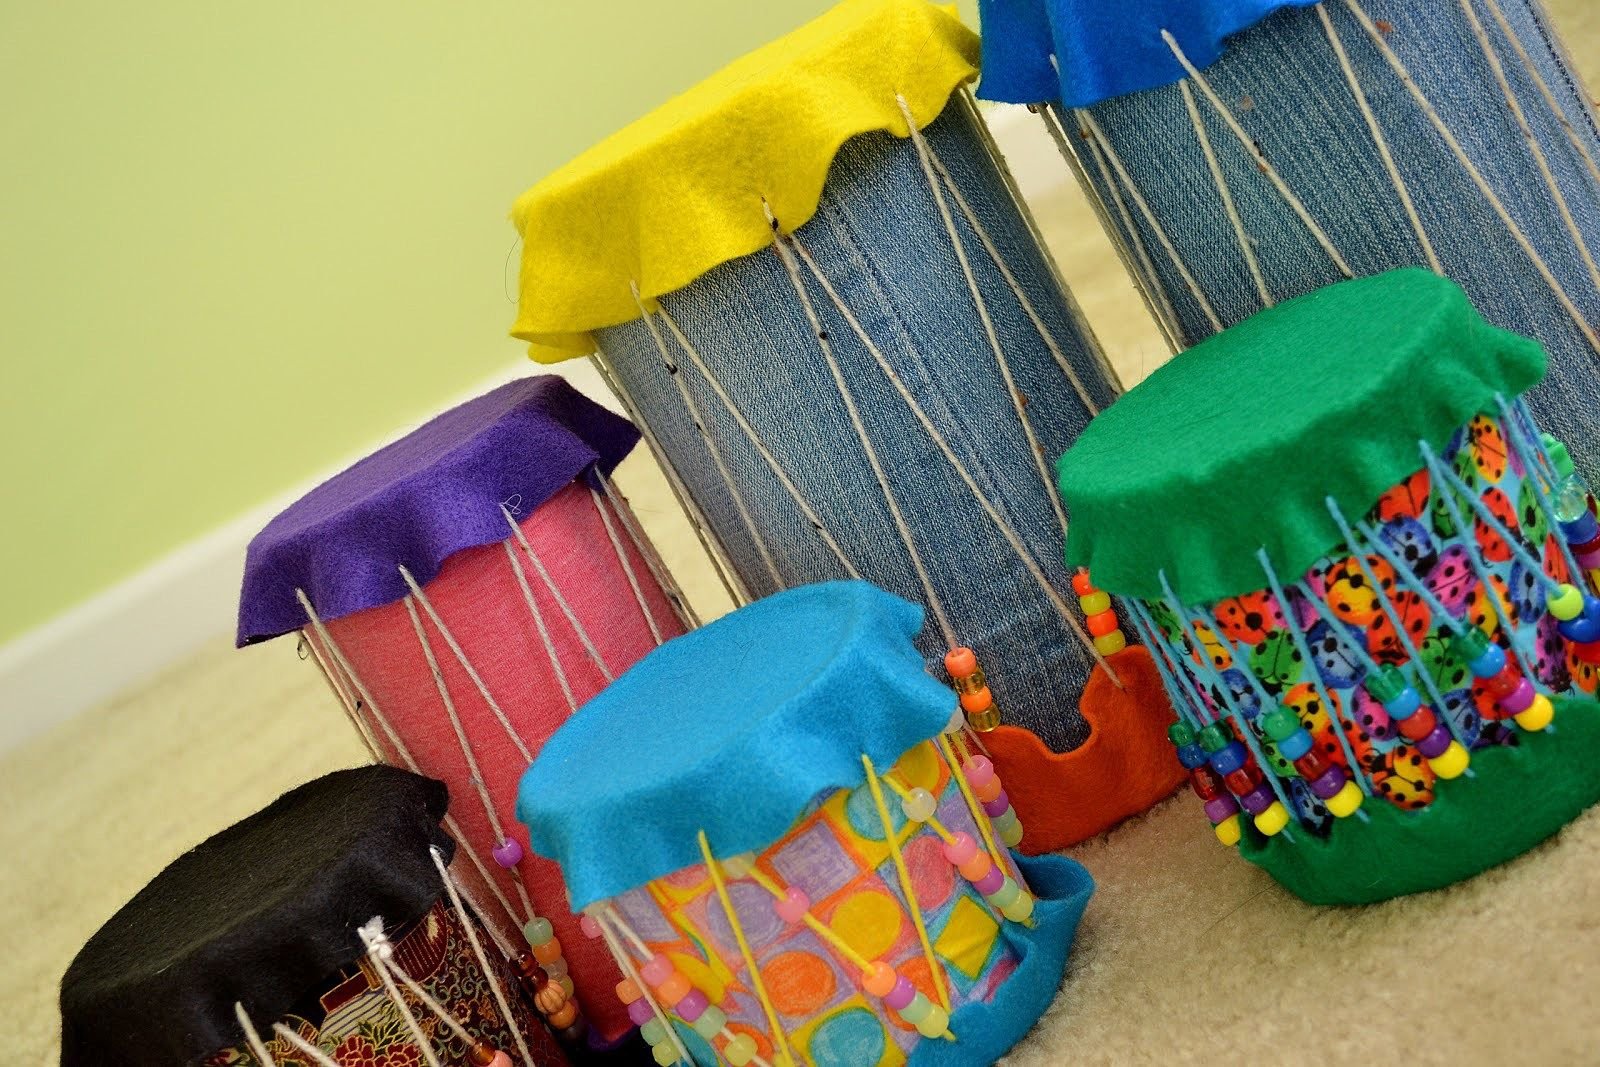 Детские музыкальные инструменты своими руками для детского сада: пошаговое описание и рекомендации